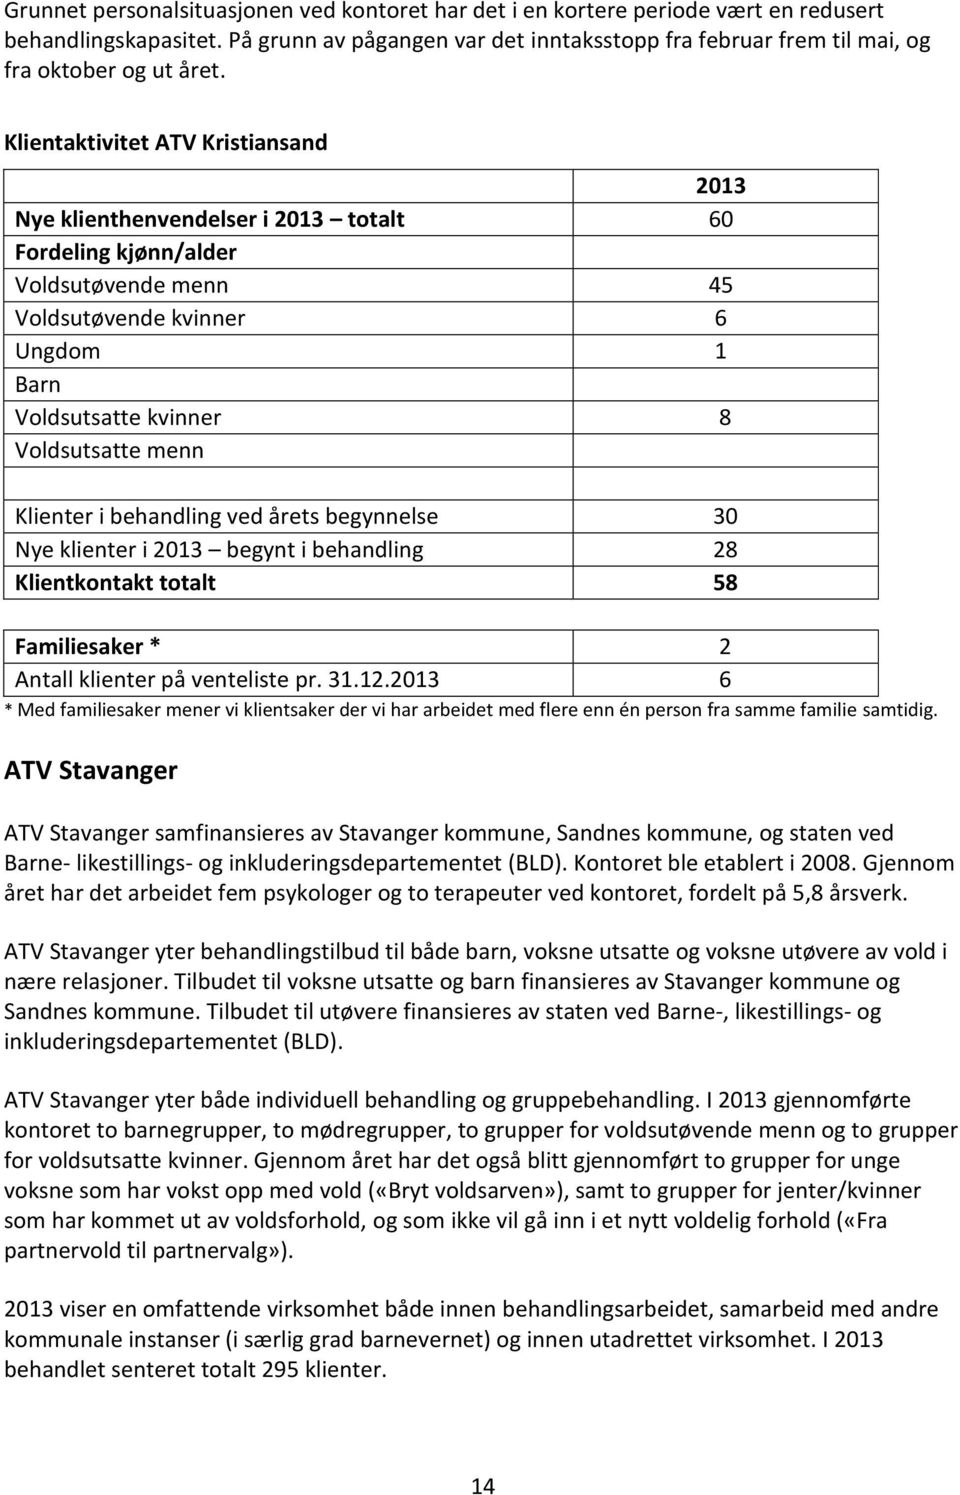 Klientaktivitet ATV Kristiansand 2013 Nye klienthenvendelser i 2013 totalt 60 Fordeling kjønn/alder Voldsutøvende menn 45 Voldsutøvende kvinner 6 Ungdom 1 Barn Voldsutsatte kvinner 8 Voldsutsatte